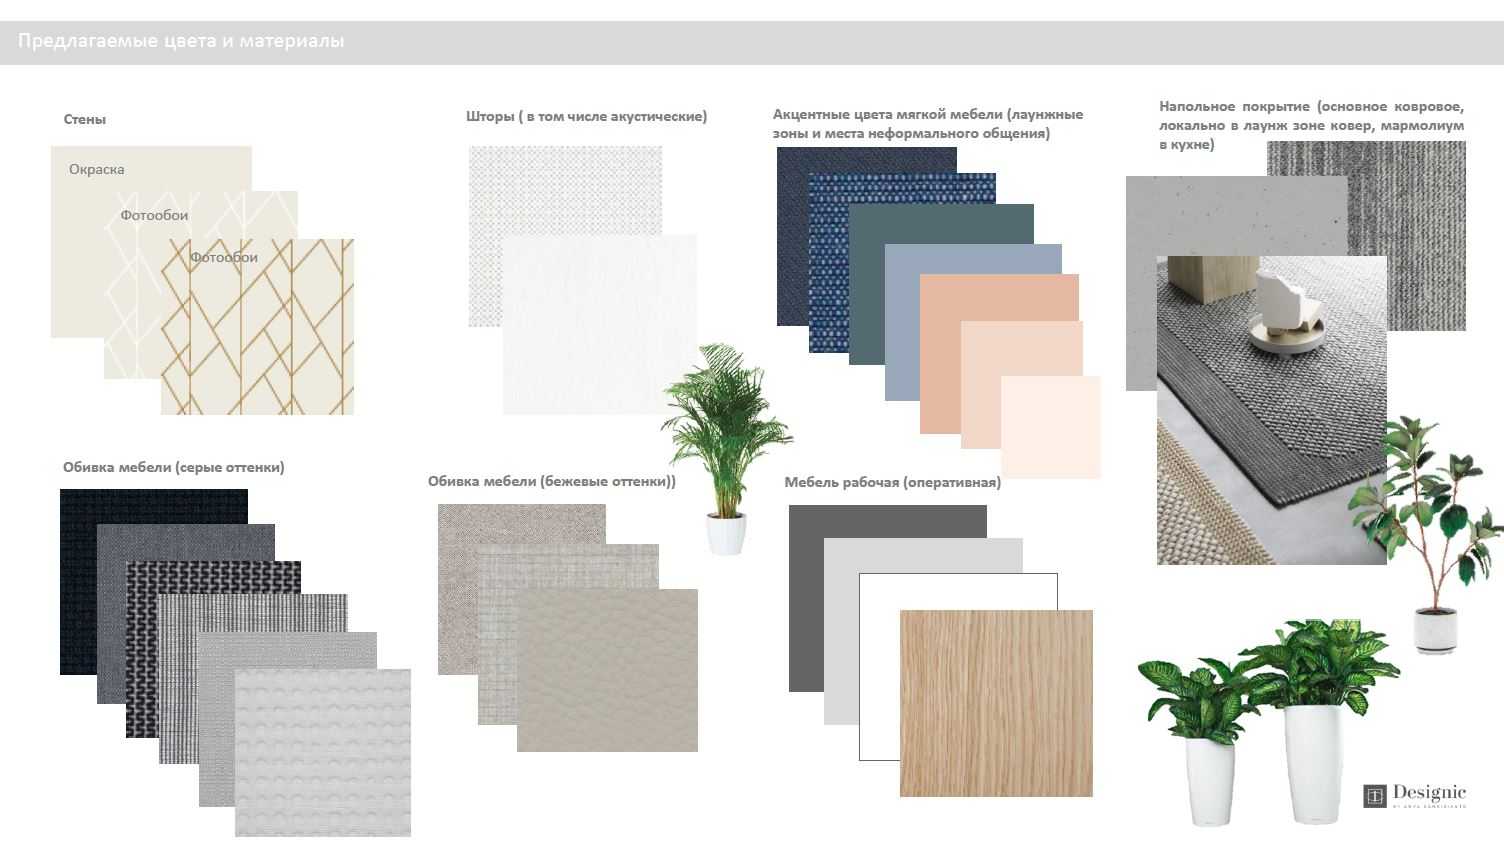 Подбор материалов и мебели в дизайн-проекте: как это происходит